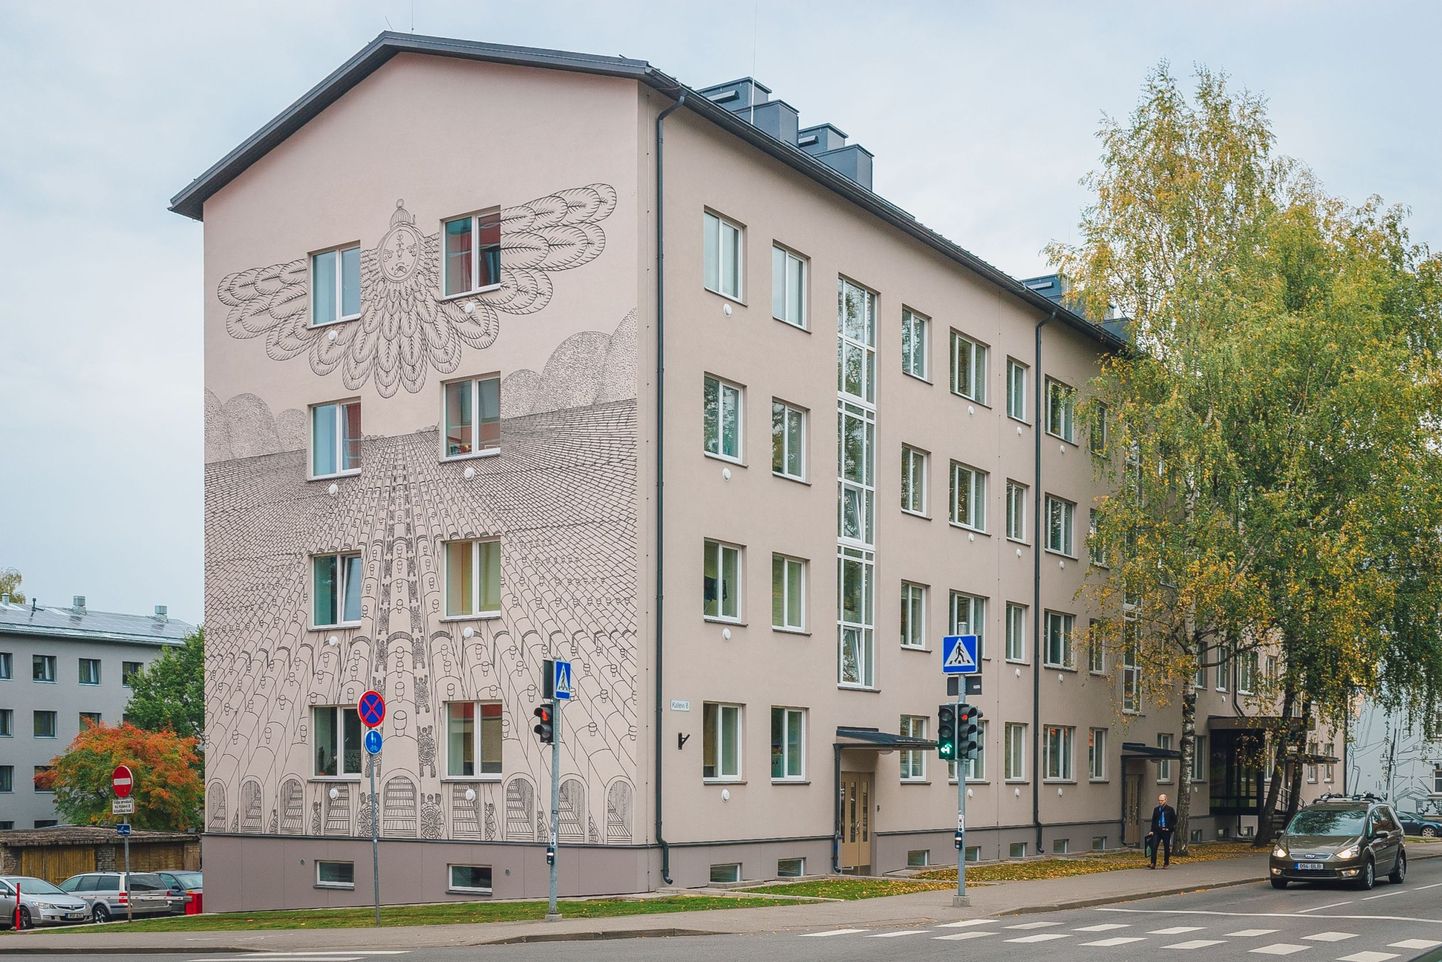 Суперграфика на стене дома в Тарту